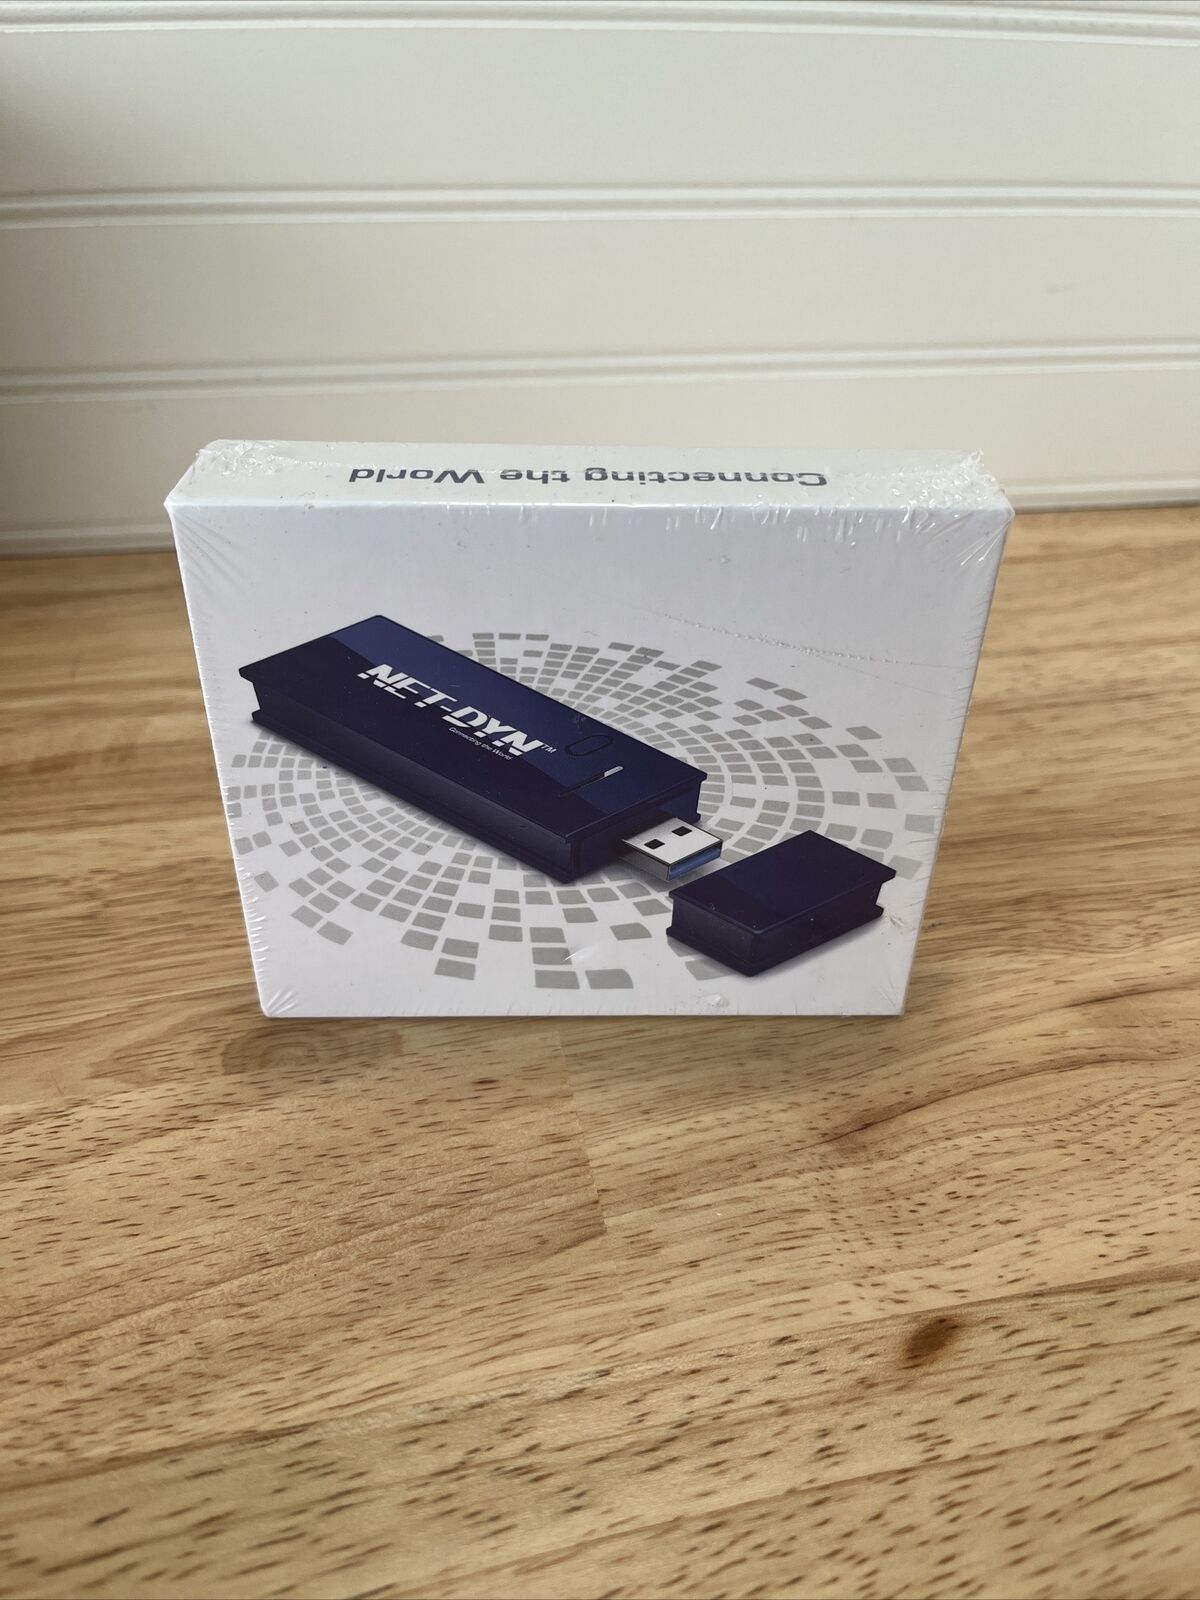 NET-DYN USB 3.0 WIRELESS WiFi ADAPTER AC1200M Dual Band 5GHz / 2.4GHz 802.11AC